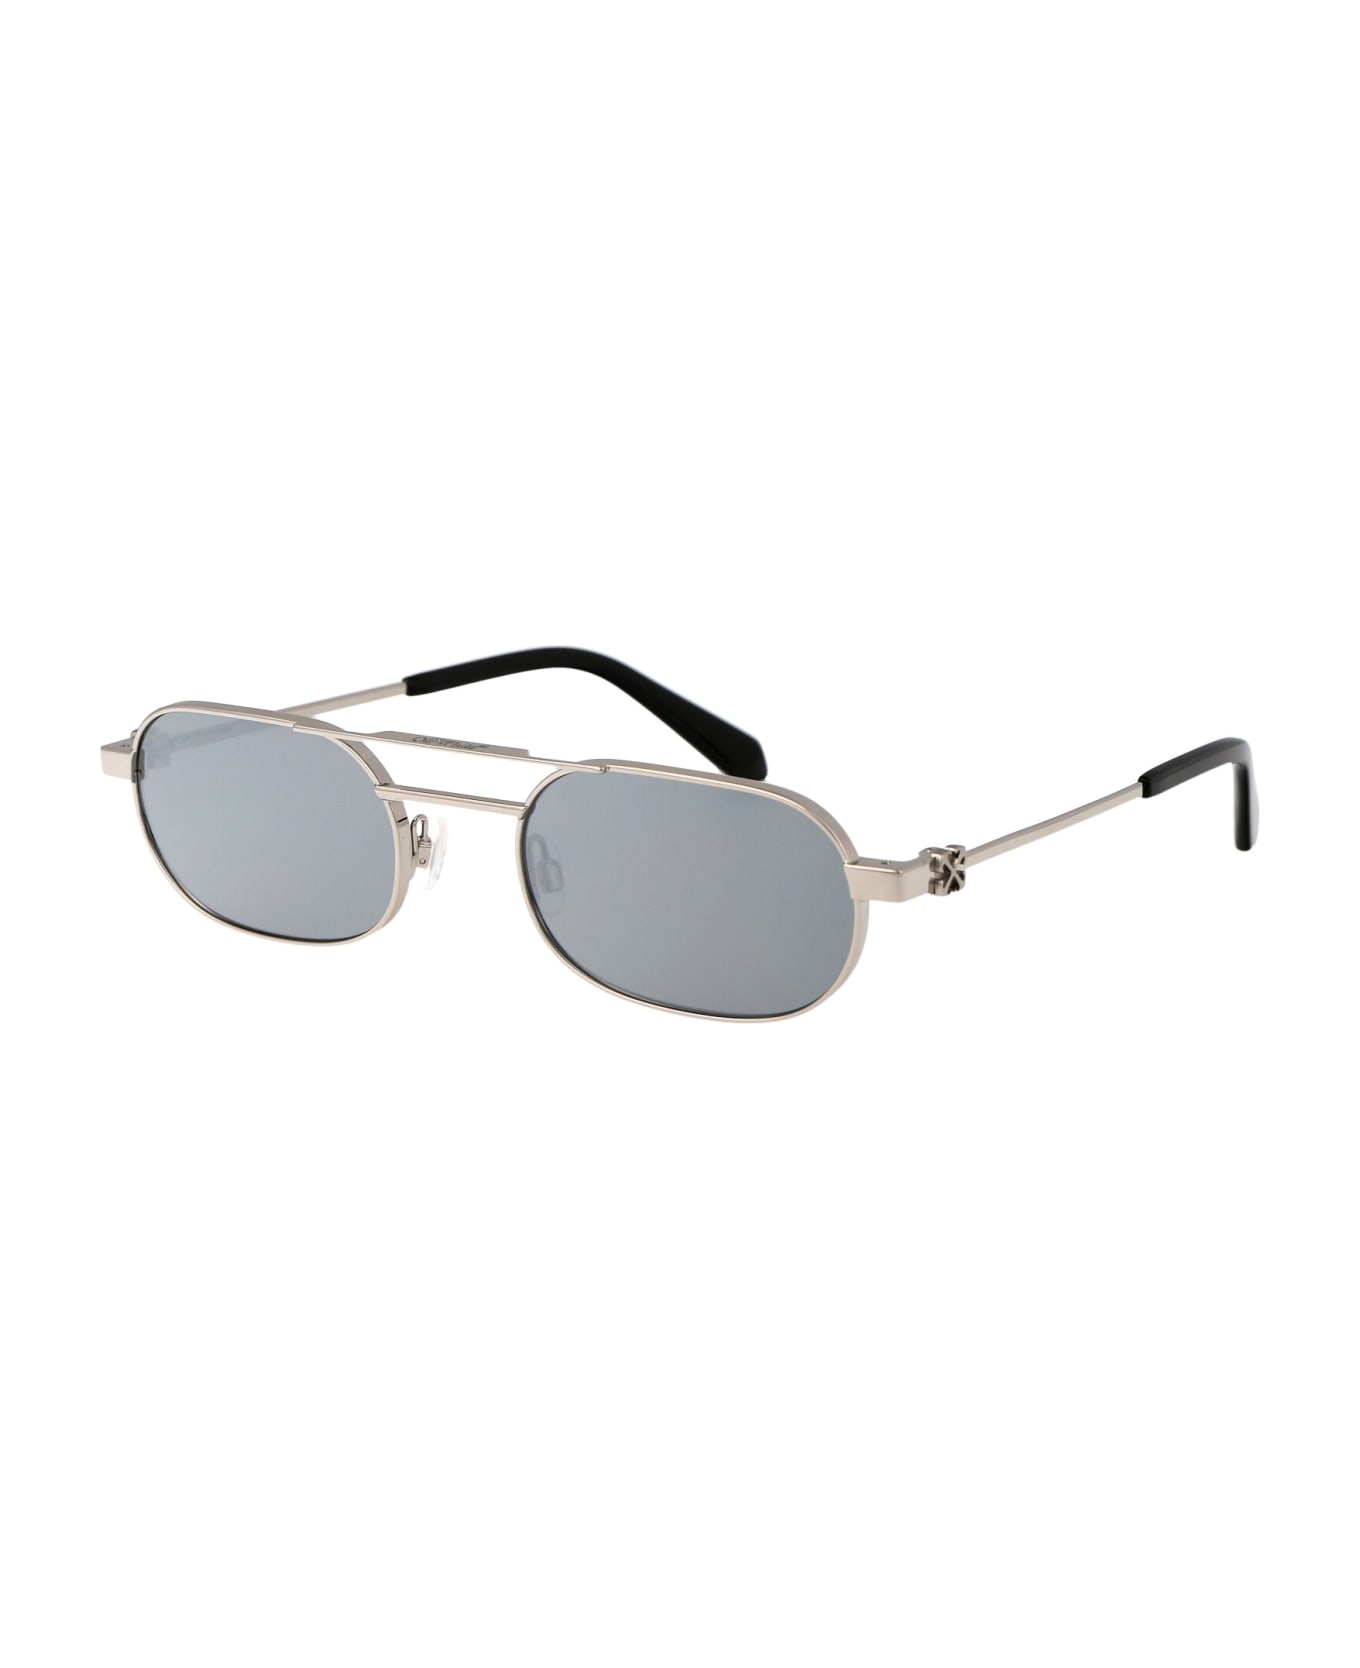 Off-White Vaiden Sunglasses - 7272 SILVER SILVER